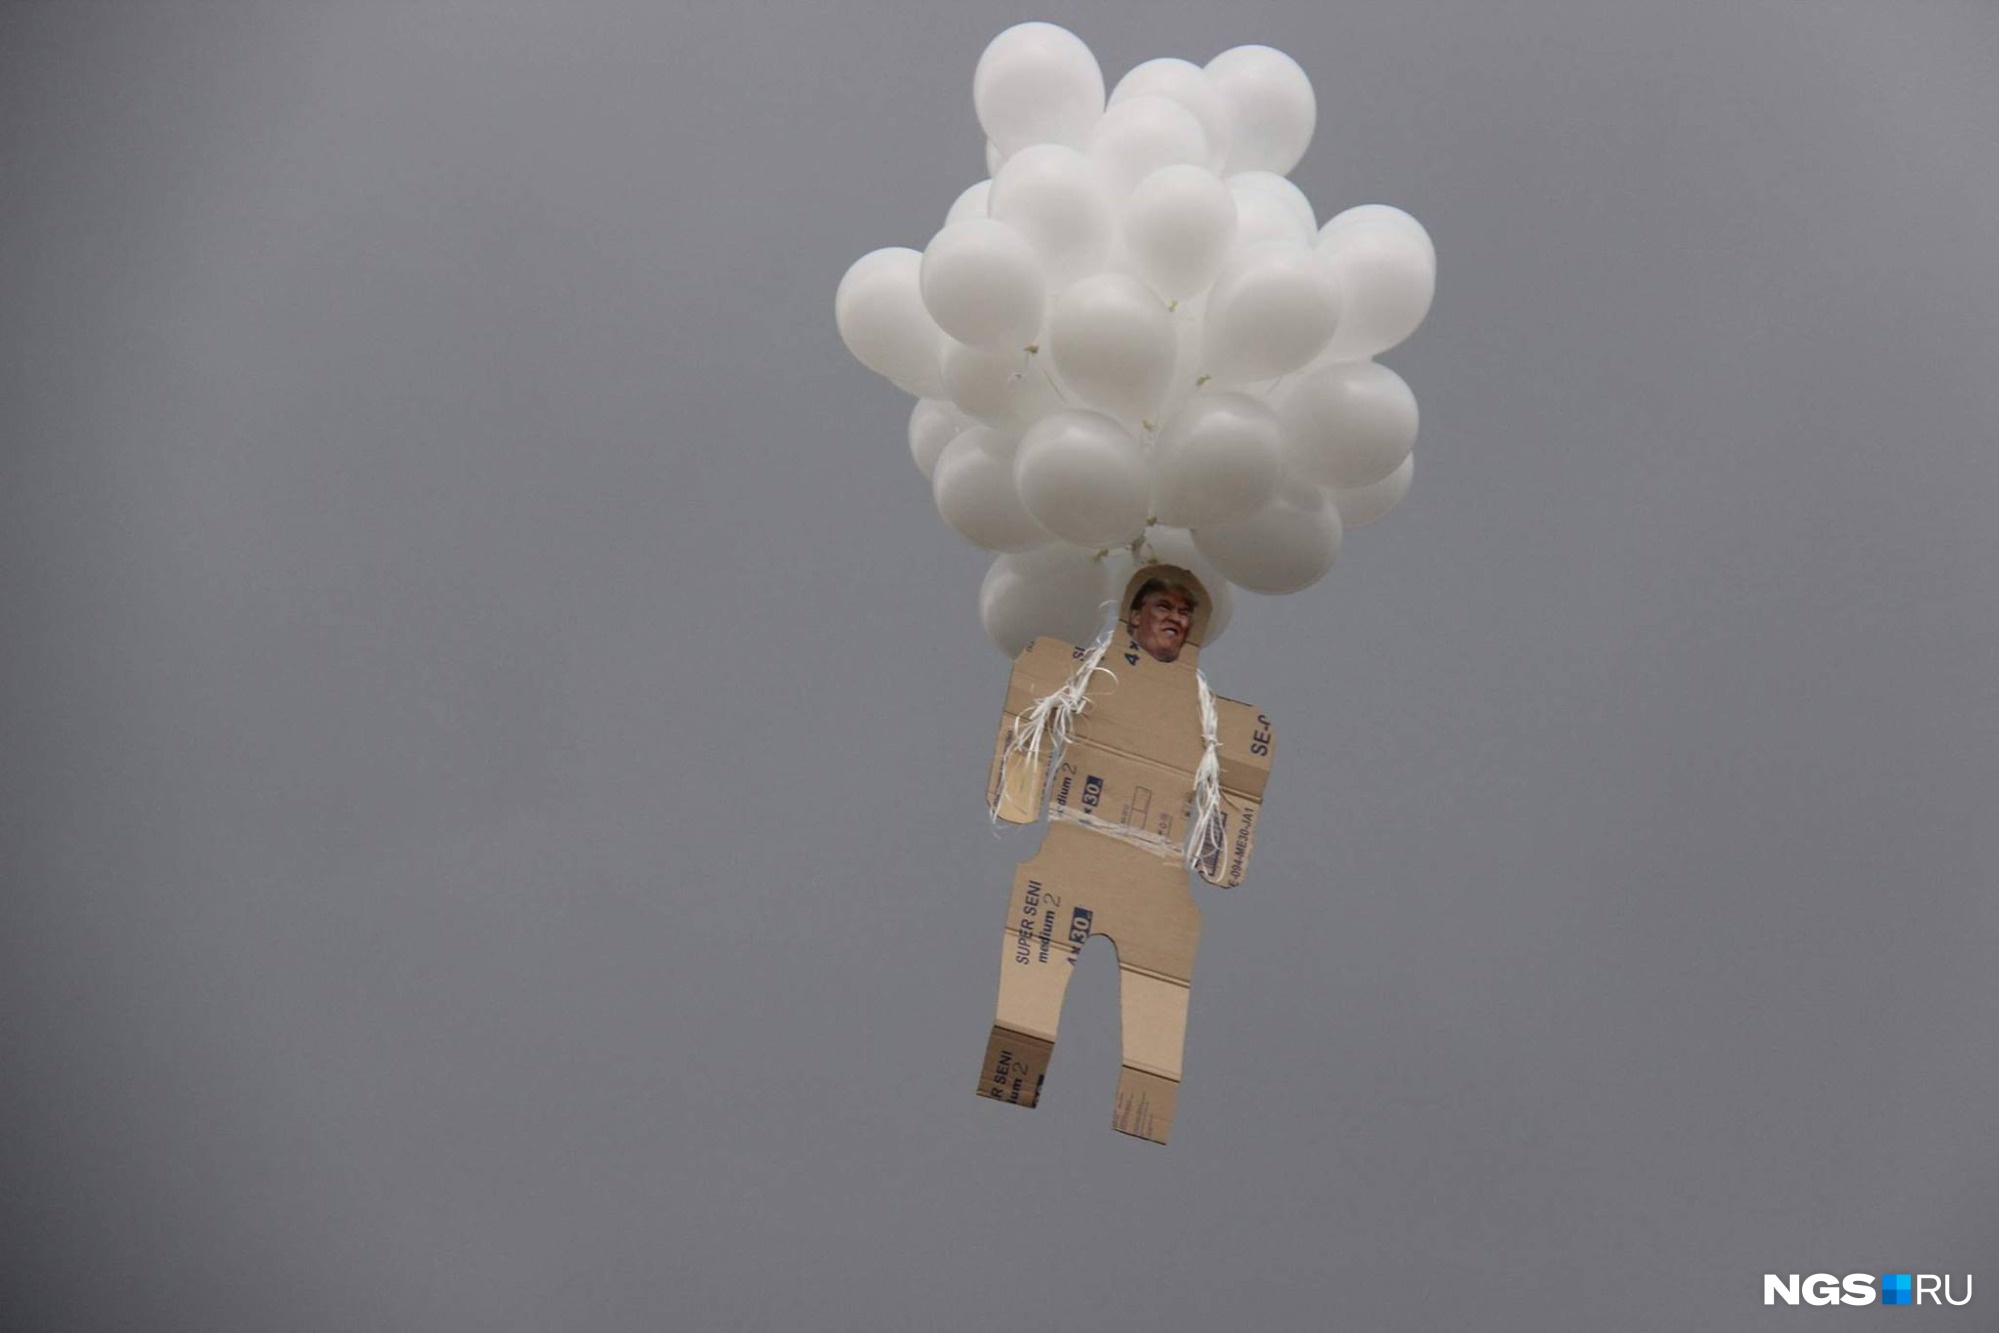 Фигура американского президента улетела в новосибирское небо на воздушных шарах. Фото Стаса Соколова 